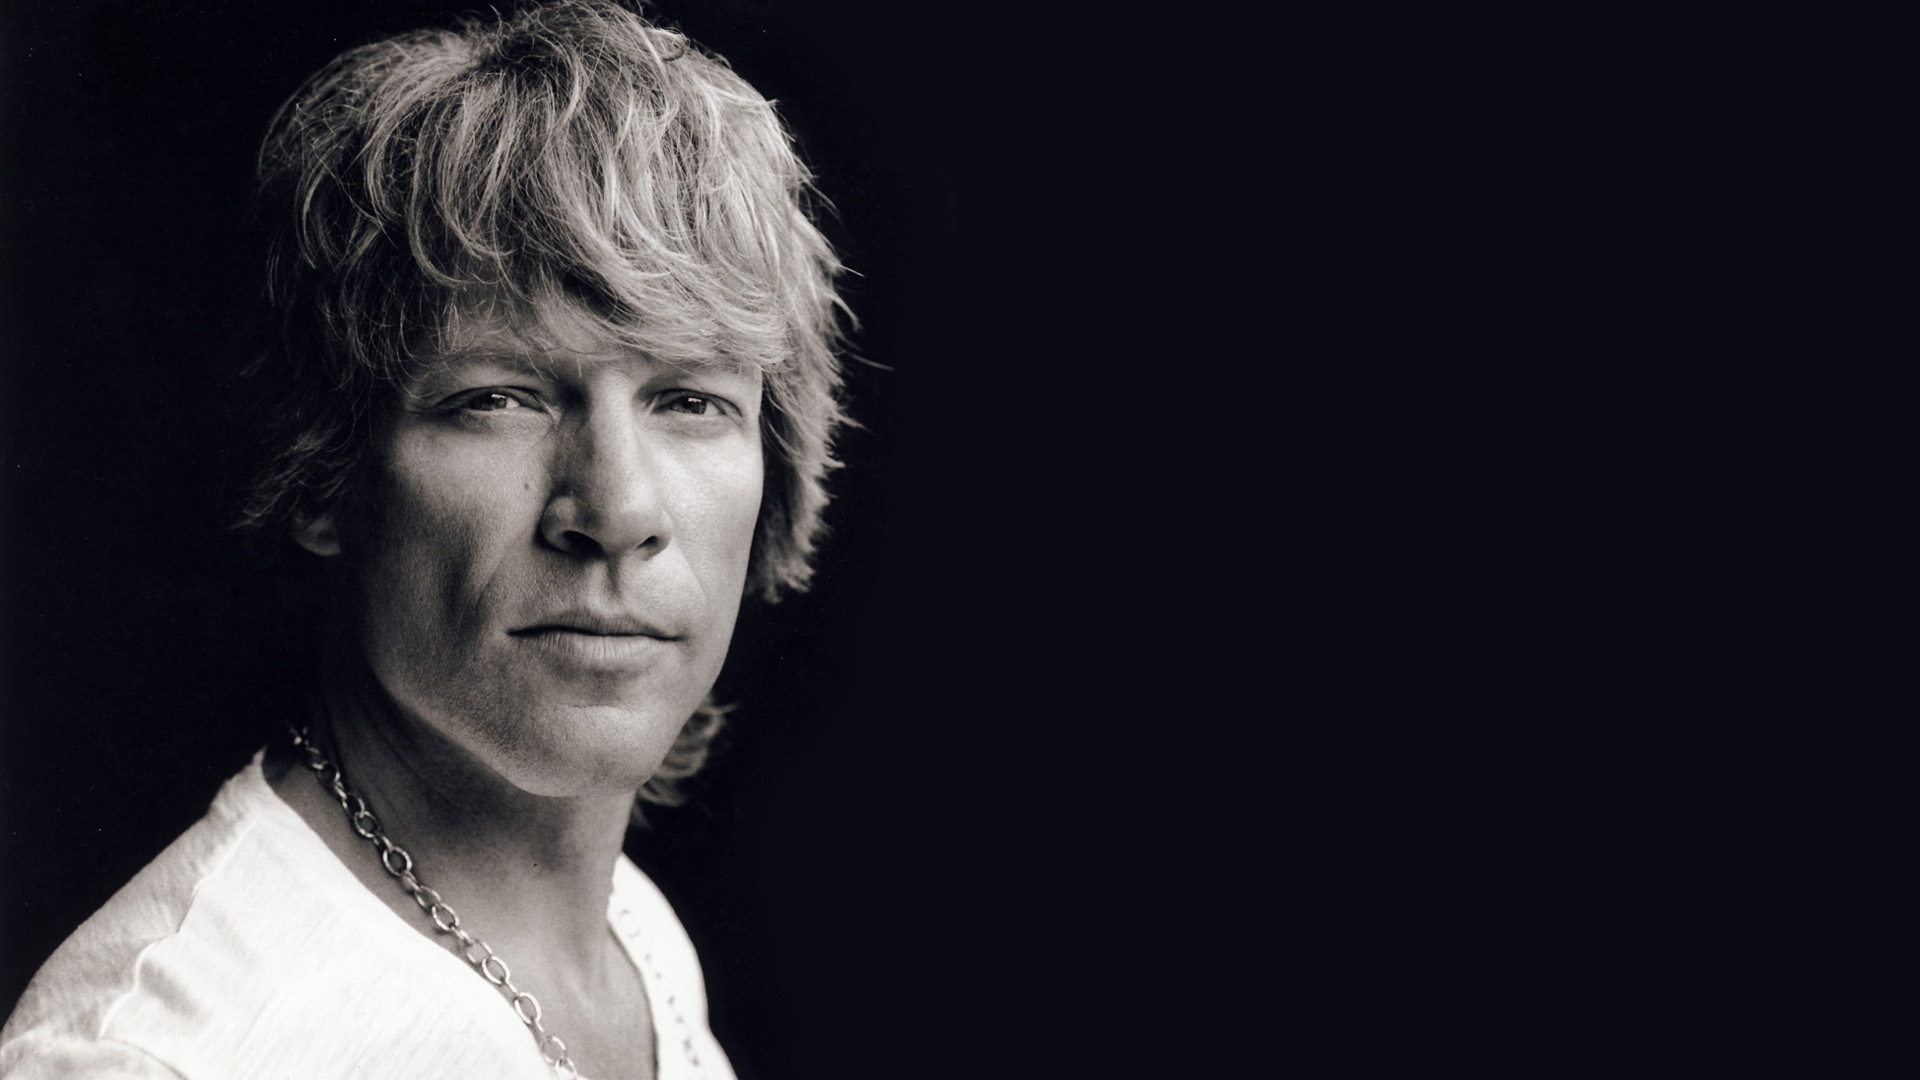 Jon Bon Jovi Wallpaper High Definition Quality